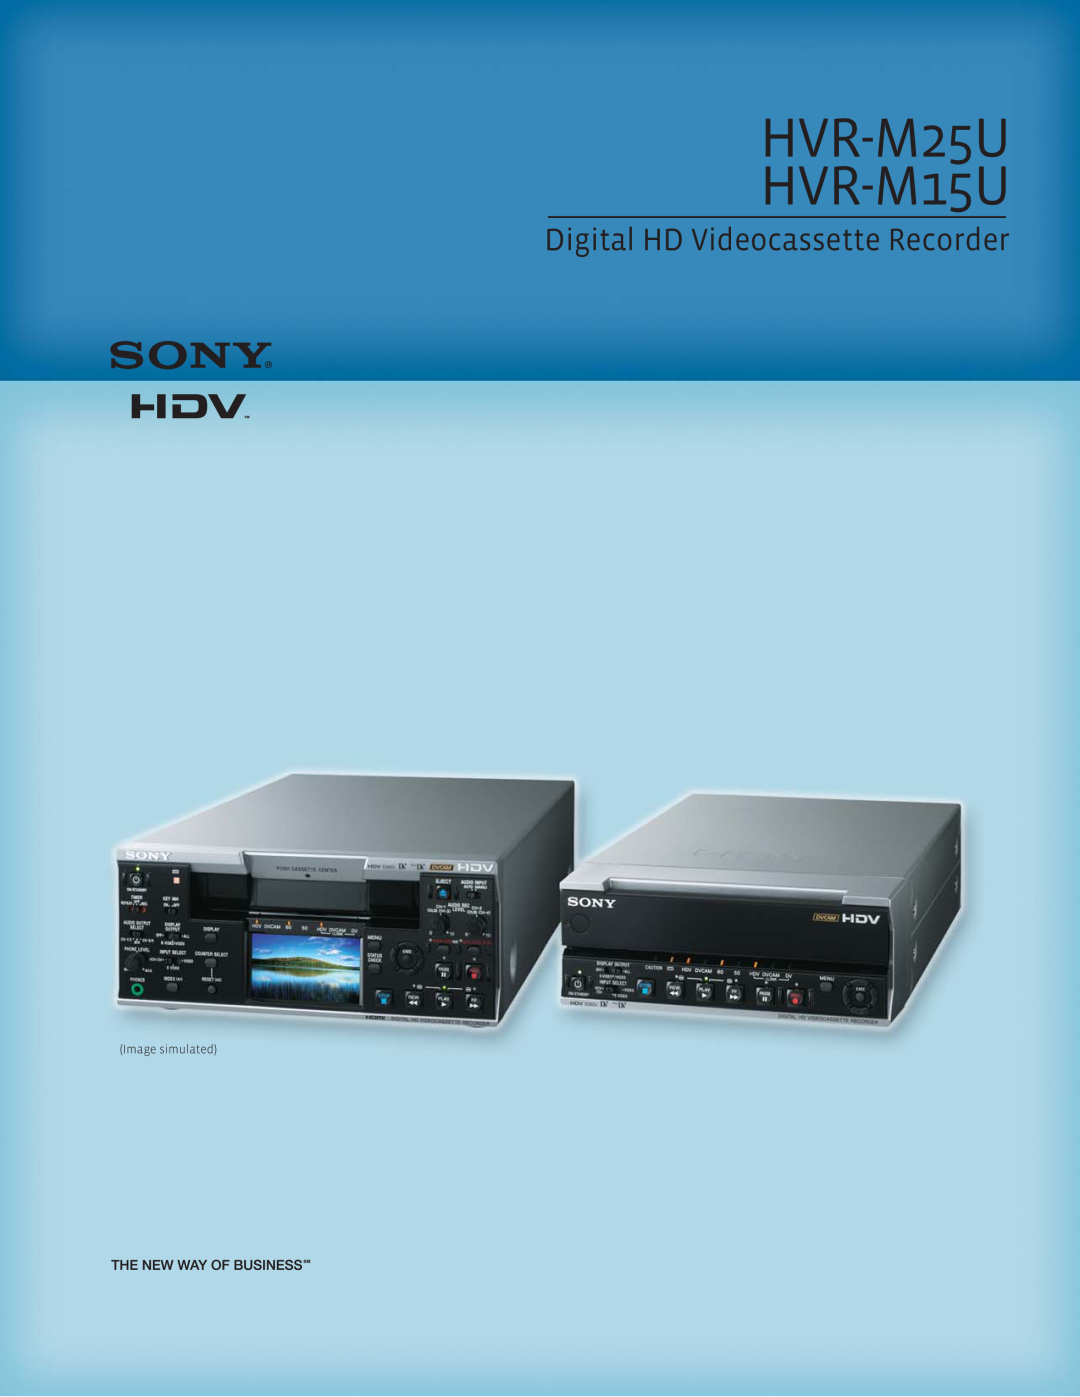 Sony manual HVR-M25U HVR-M15U, Digital HD Videocassette Recorder 